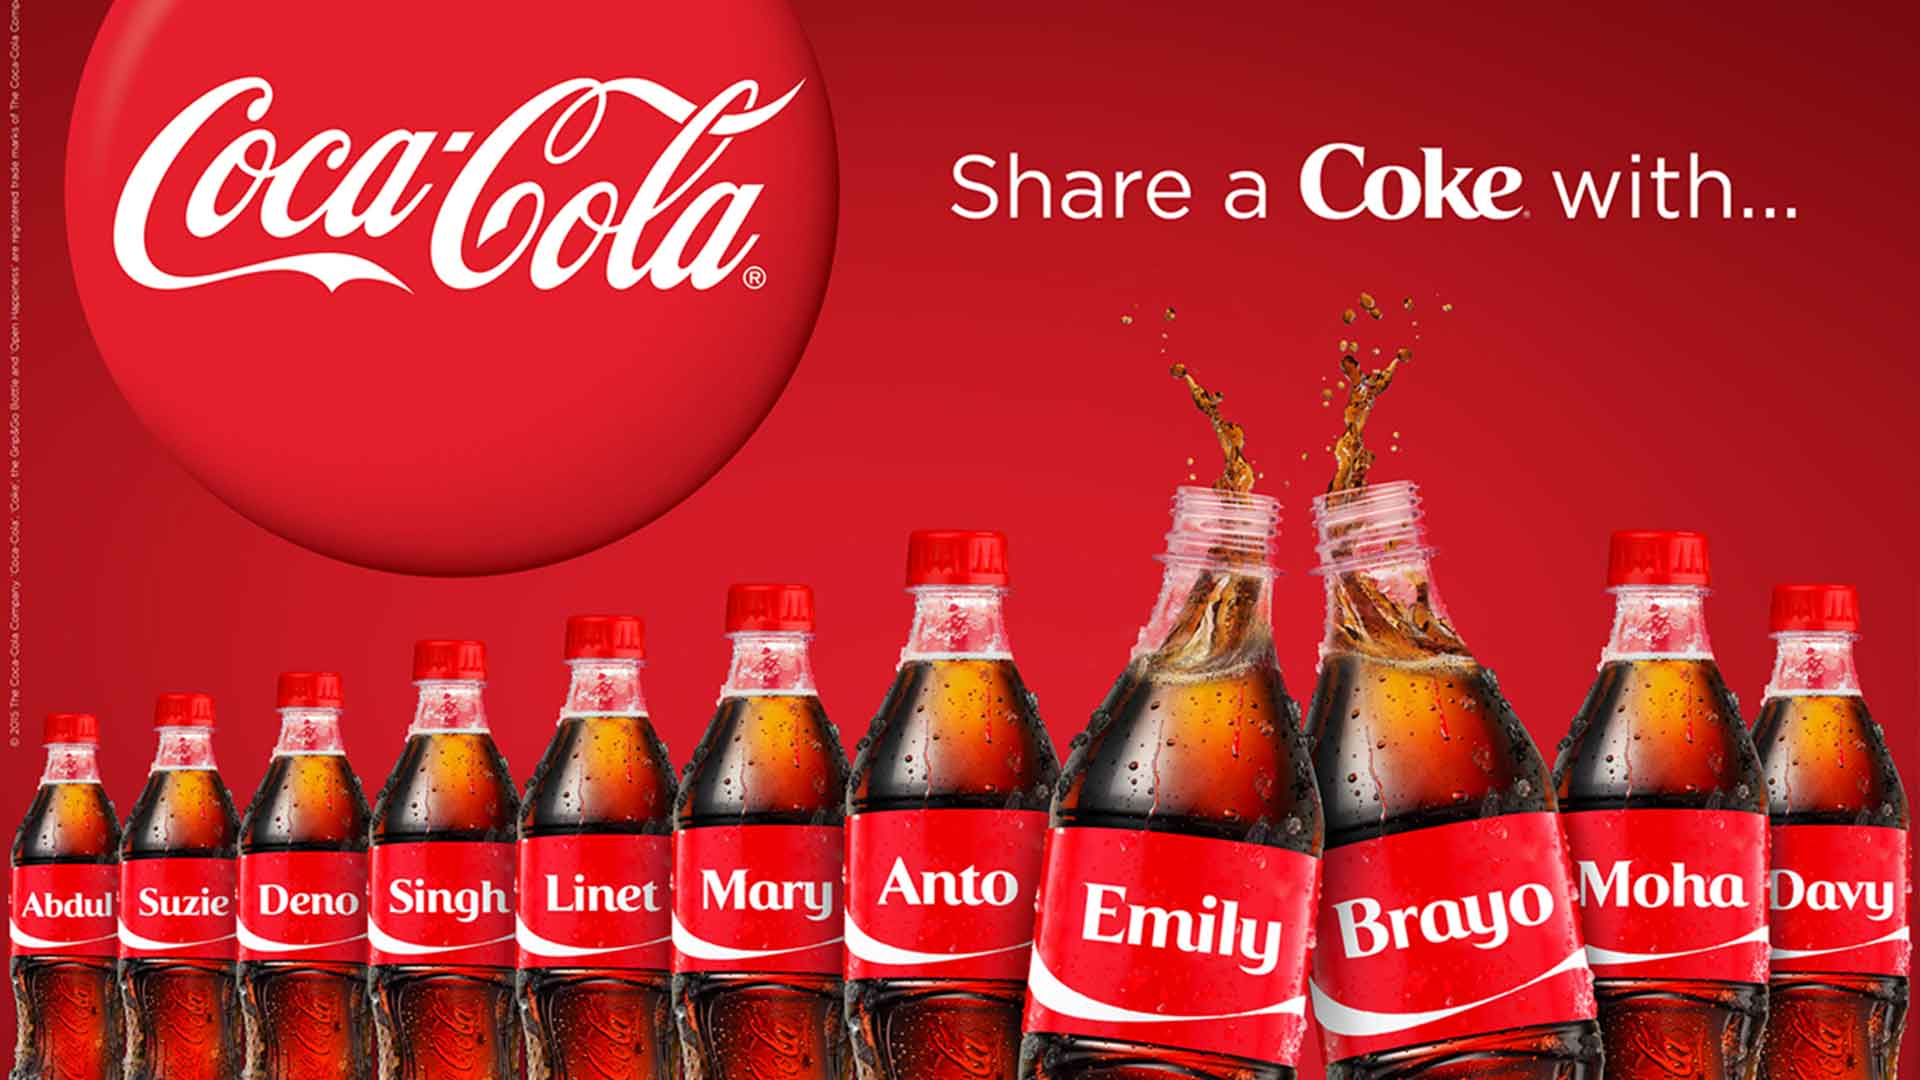 “Share a Coke” Coca-Cola: Kisah Sukses Kampanye yang Menghadirkan Personalisasi Merek